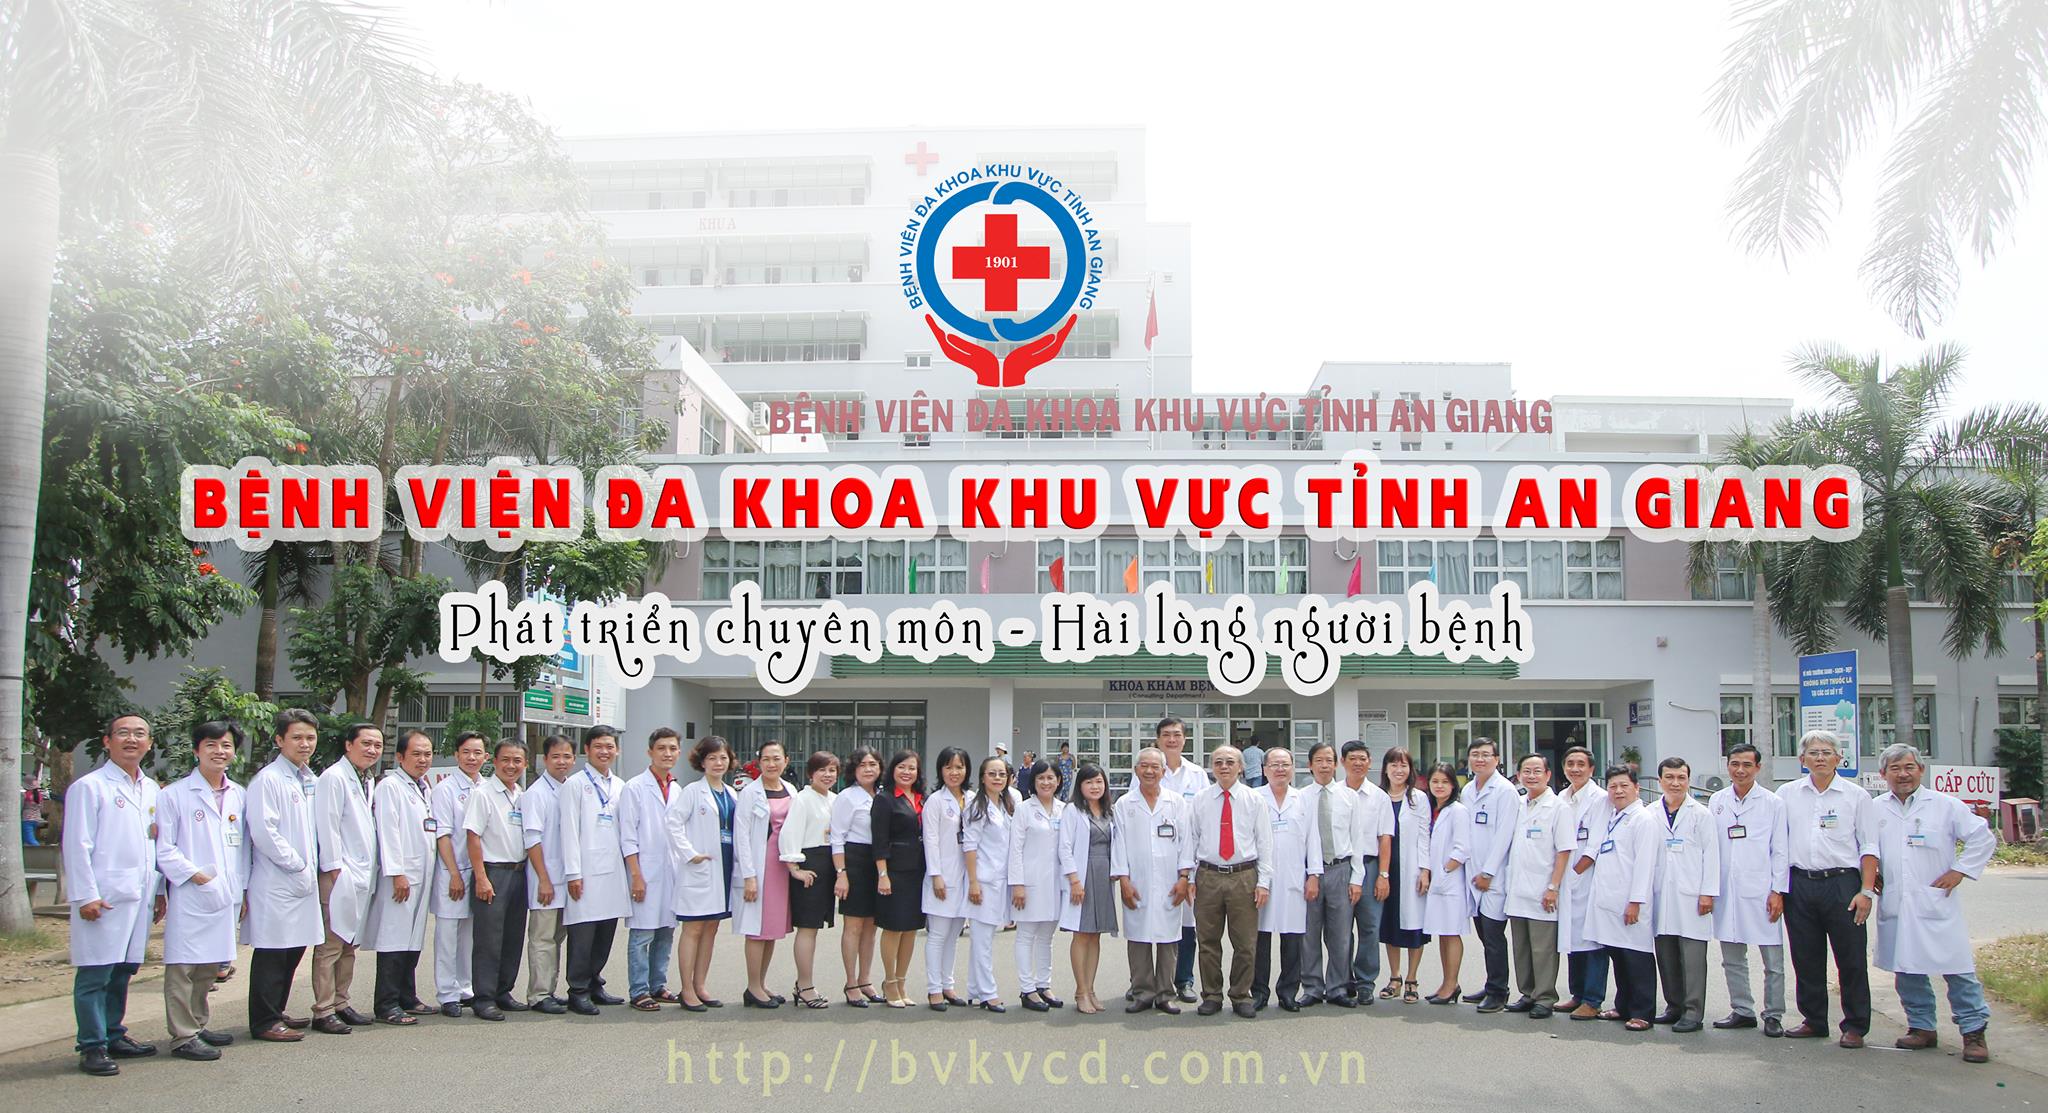 Bệnh viện đa khoa khu vực tỉnh An Giang ảnh 1